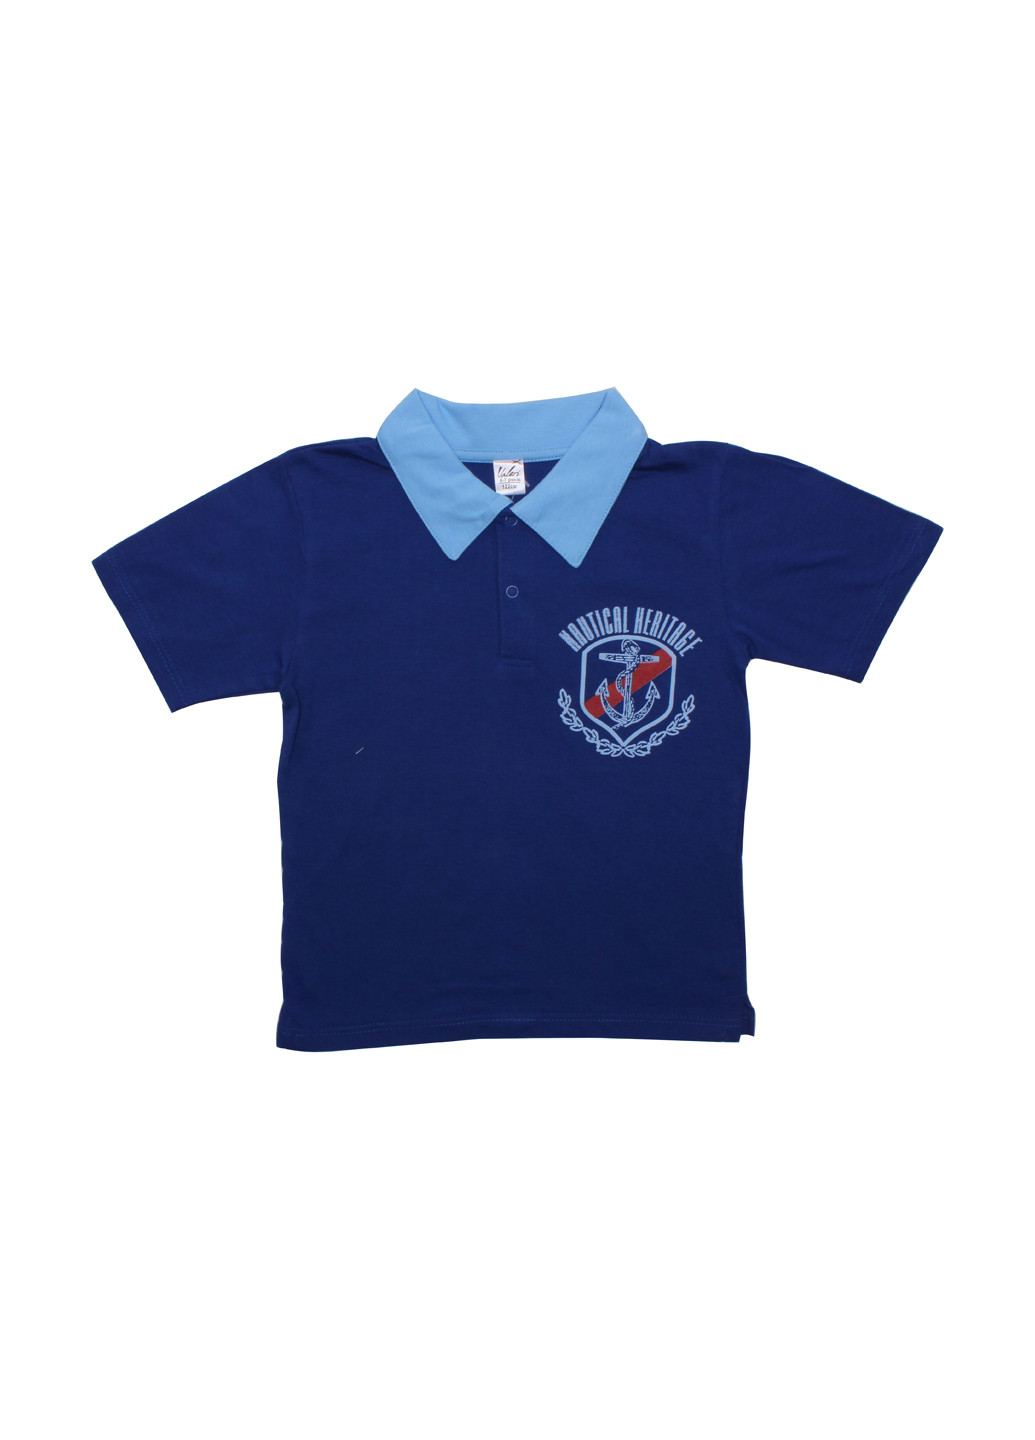 Синяя детская футболка-поло для мальчика Валери-Текс с рисунком